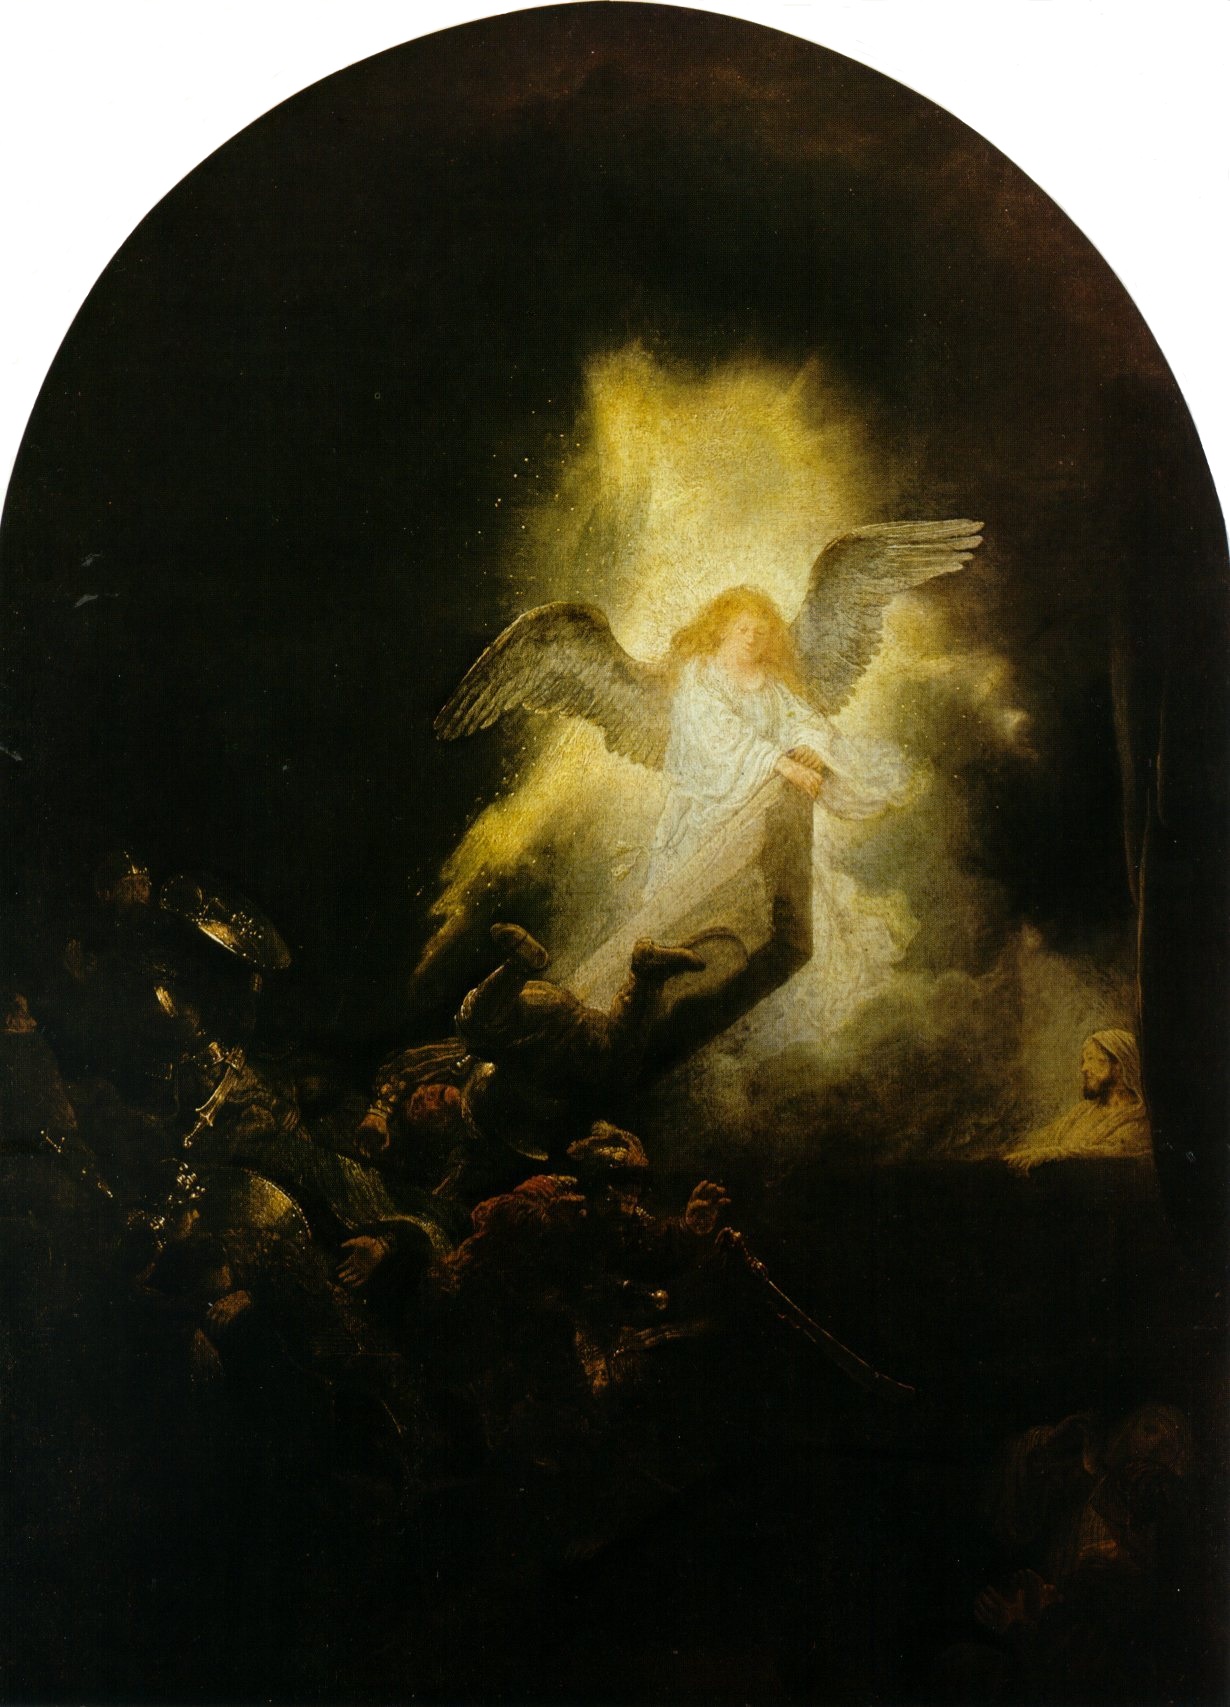 Рембрандт Харменс ван Рейн. "Воскресение Христово". 1636. Старая пинакотека, Мюнхен.